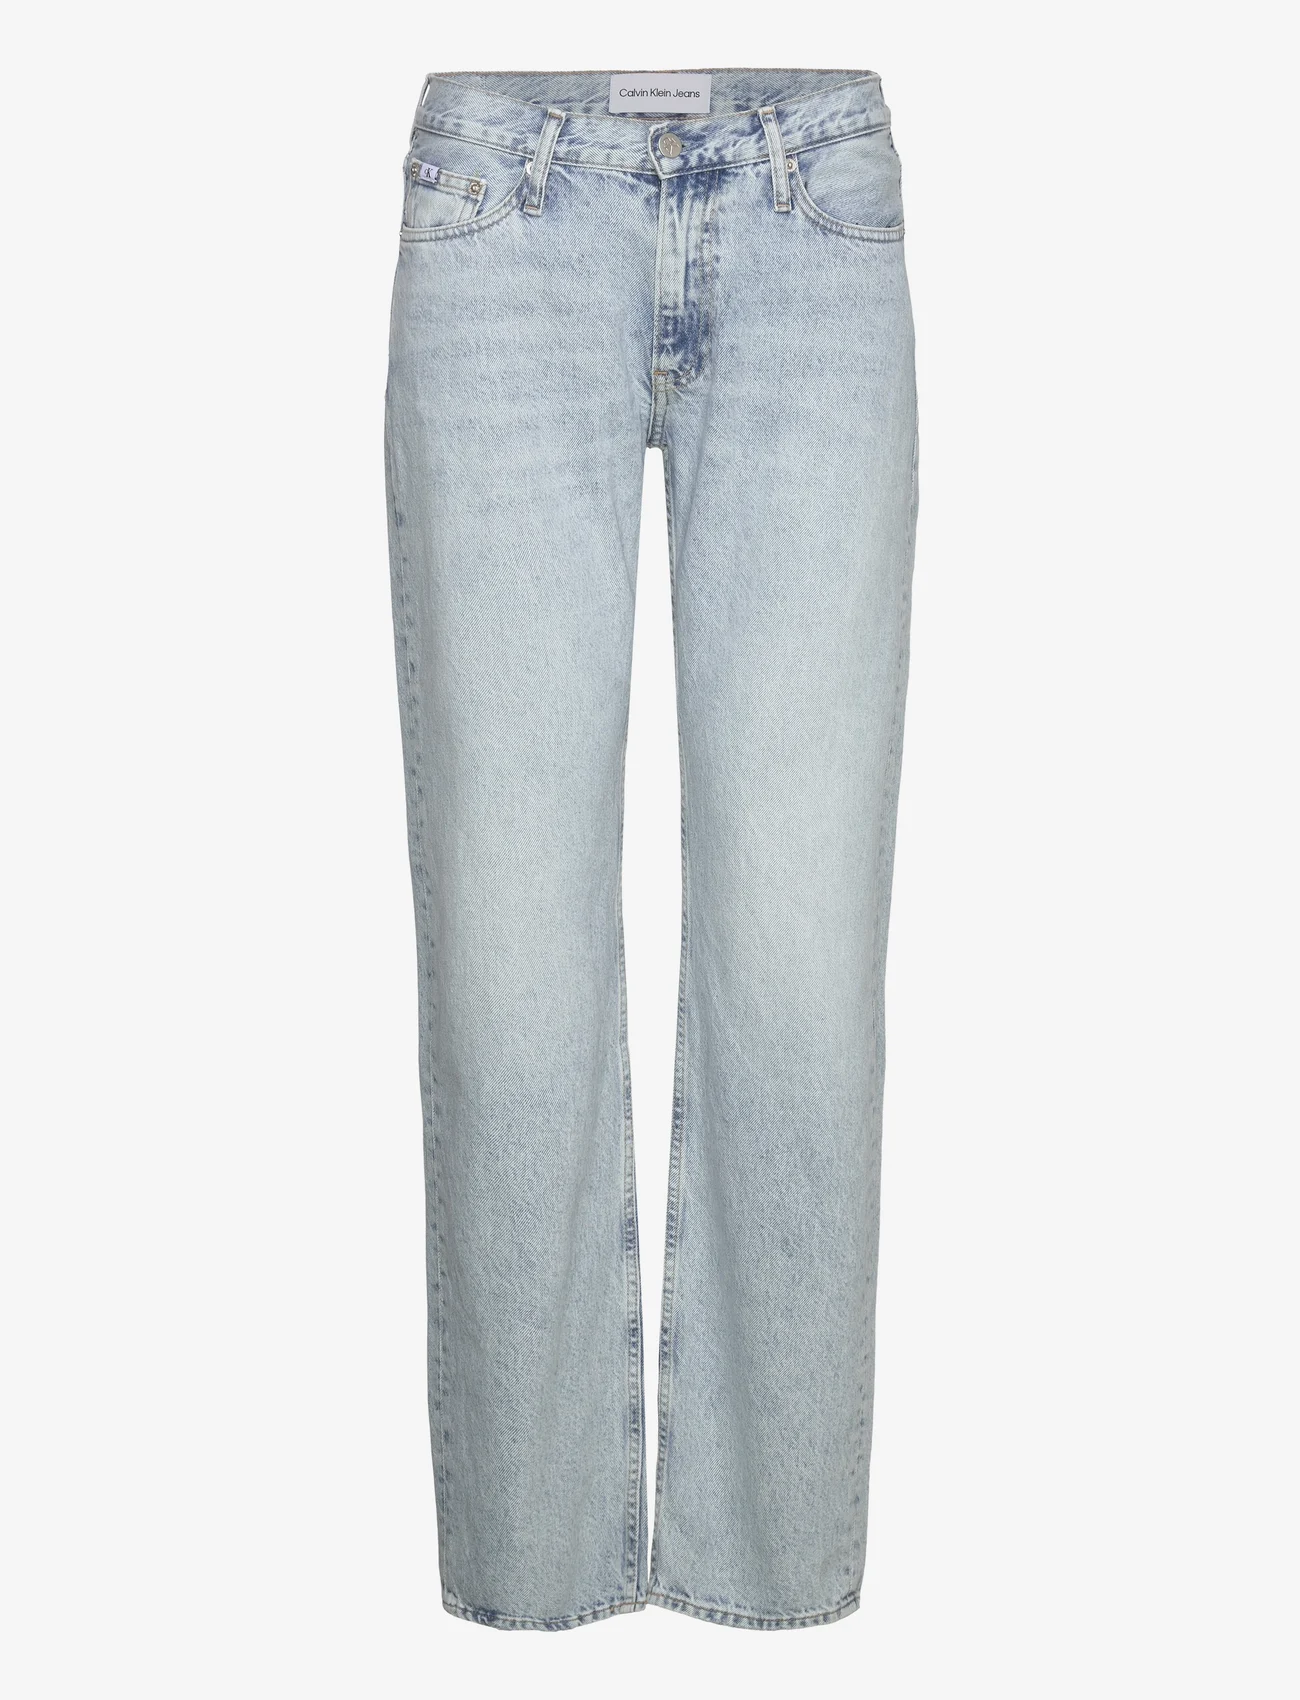 Calvin Klein Jeans - LOW RISE STRAIGHT - tiesaus kirpimo džinsai - denim light - 0